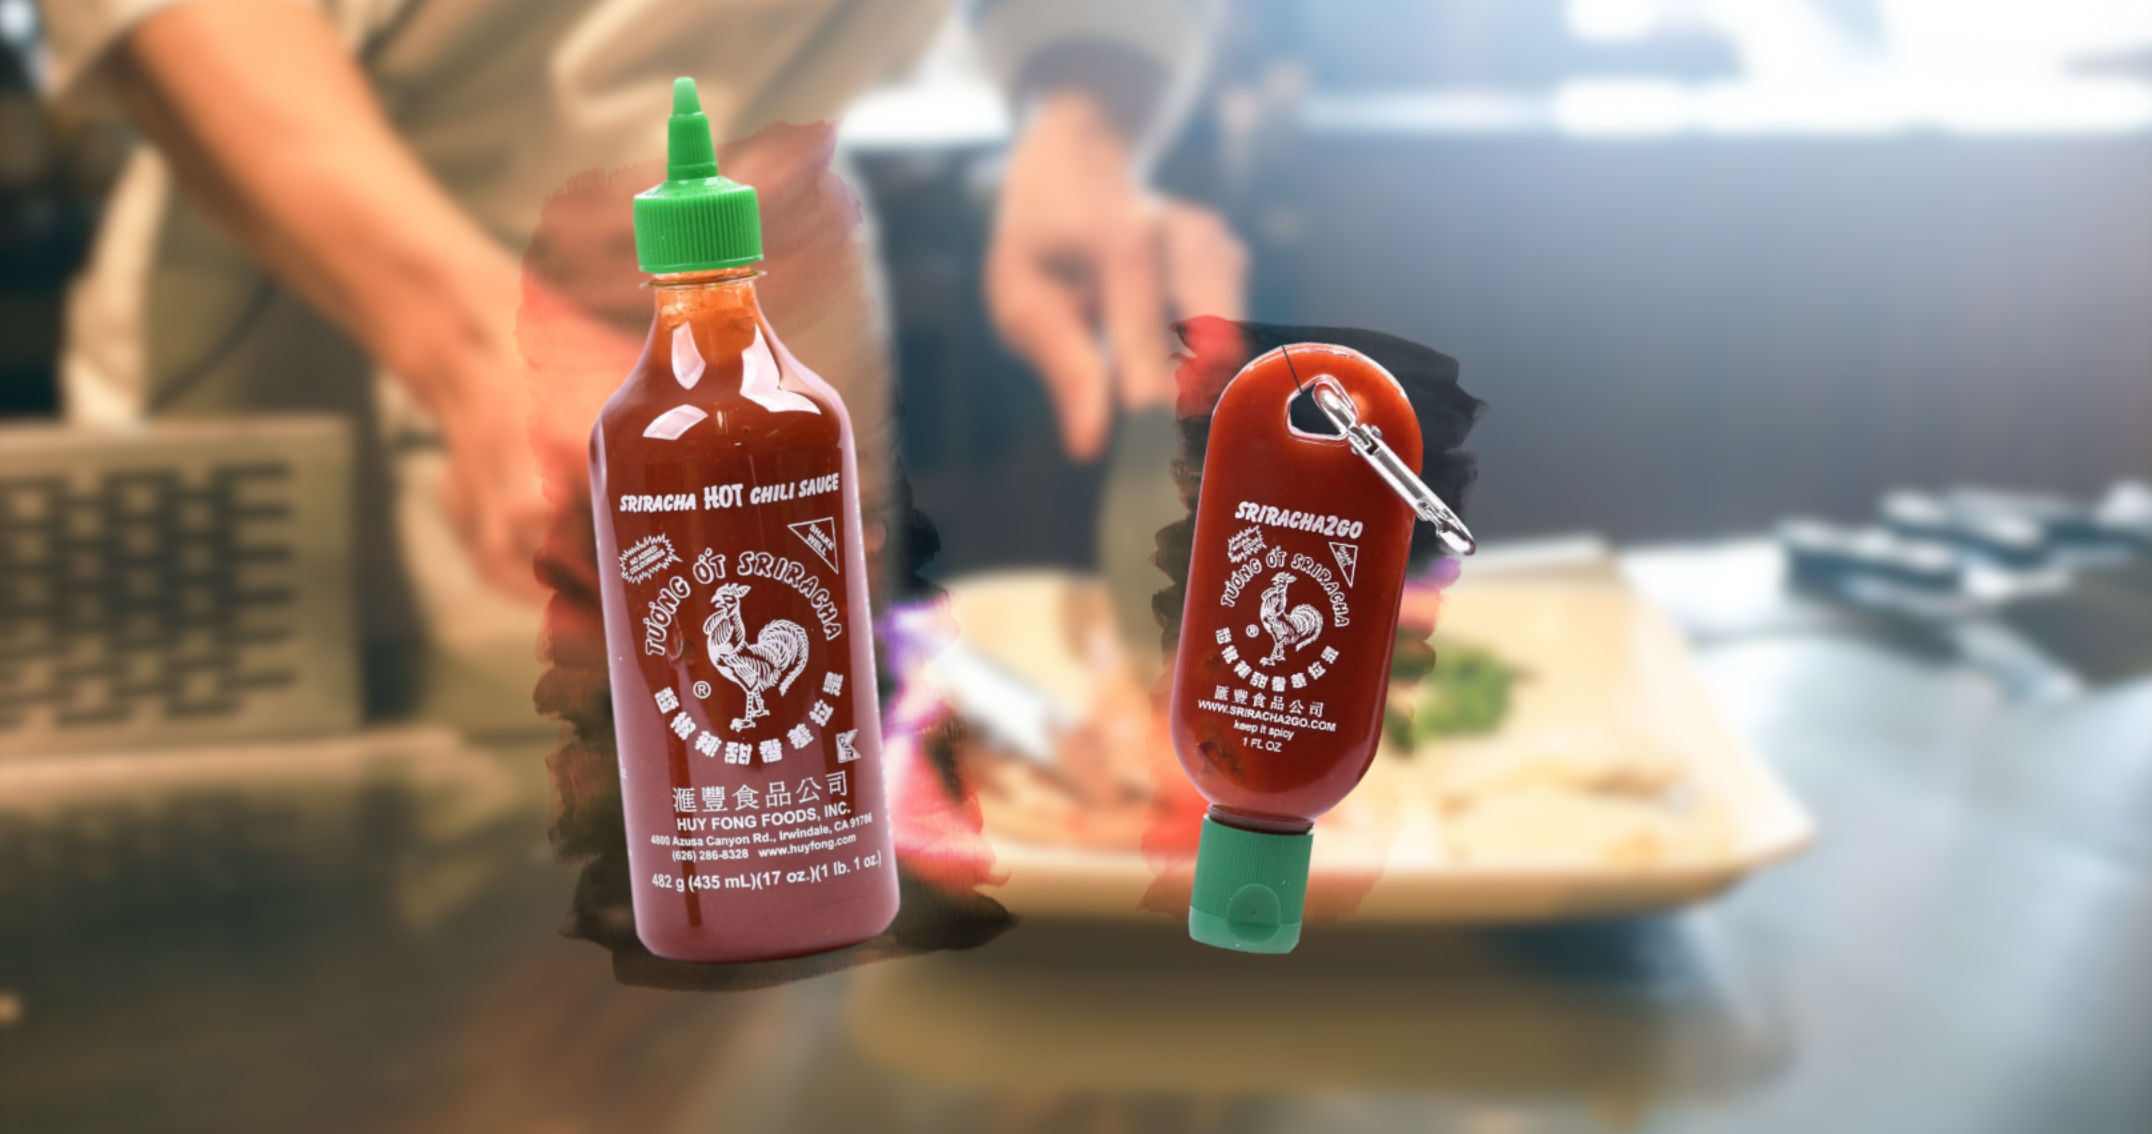 huid Traditioneel grijs De perfecte sleutelhanger voor de echte Sriracha-fan - FHM